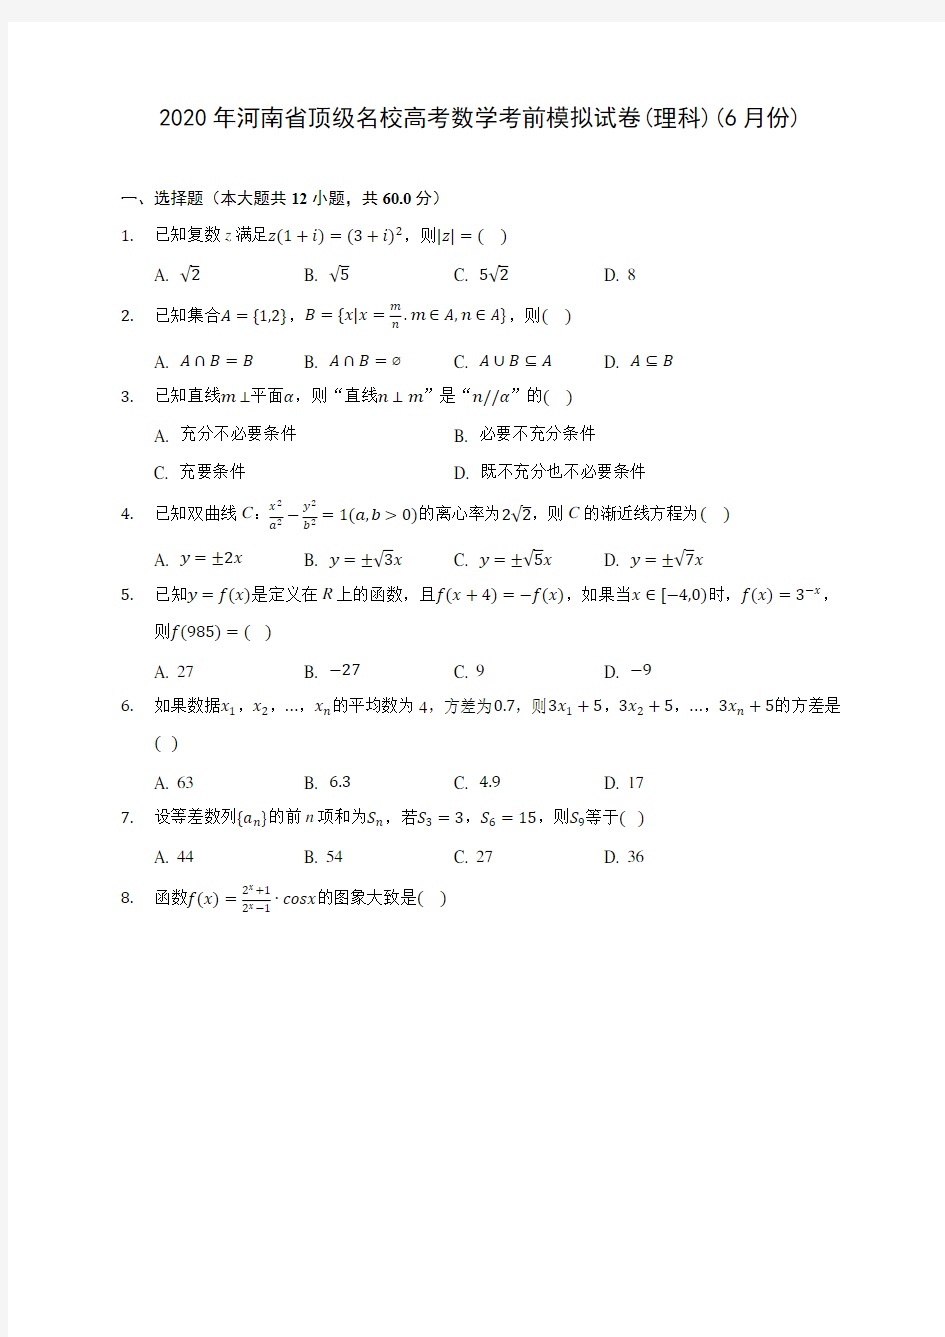 2020年河南省顶级名校高考数学考前模拟试卷(理科)(6月份) (含解析)